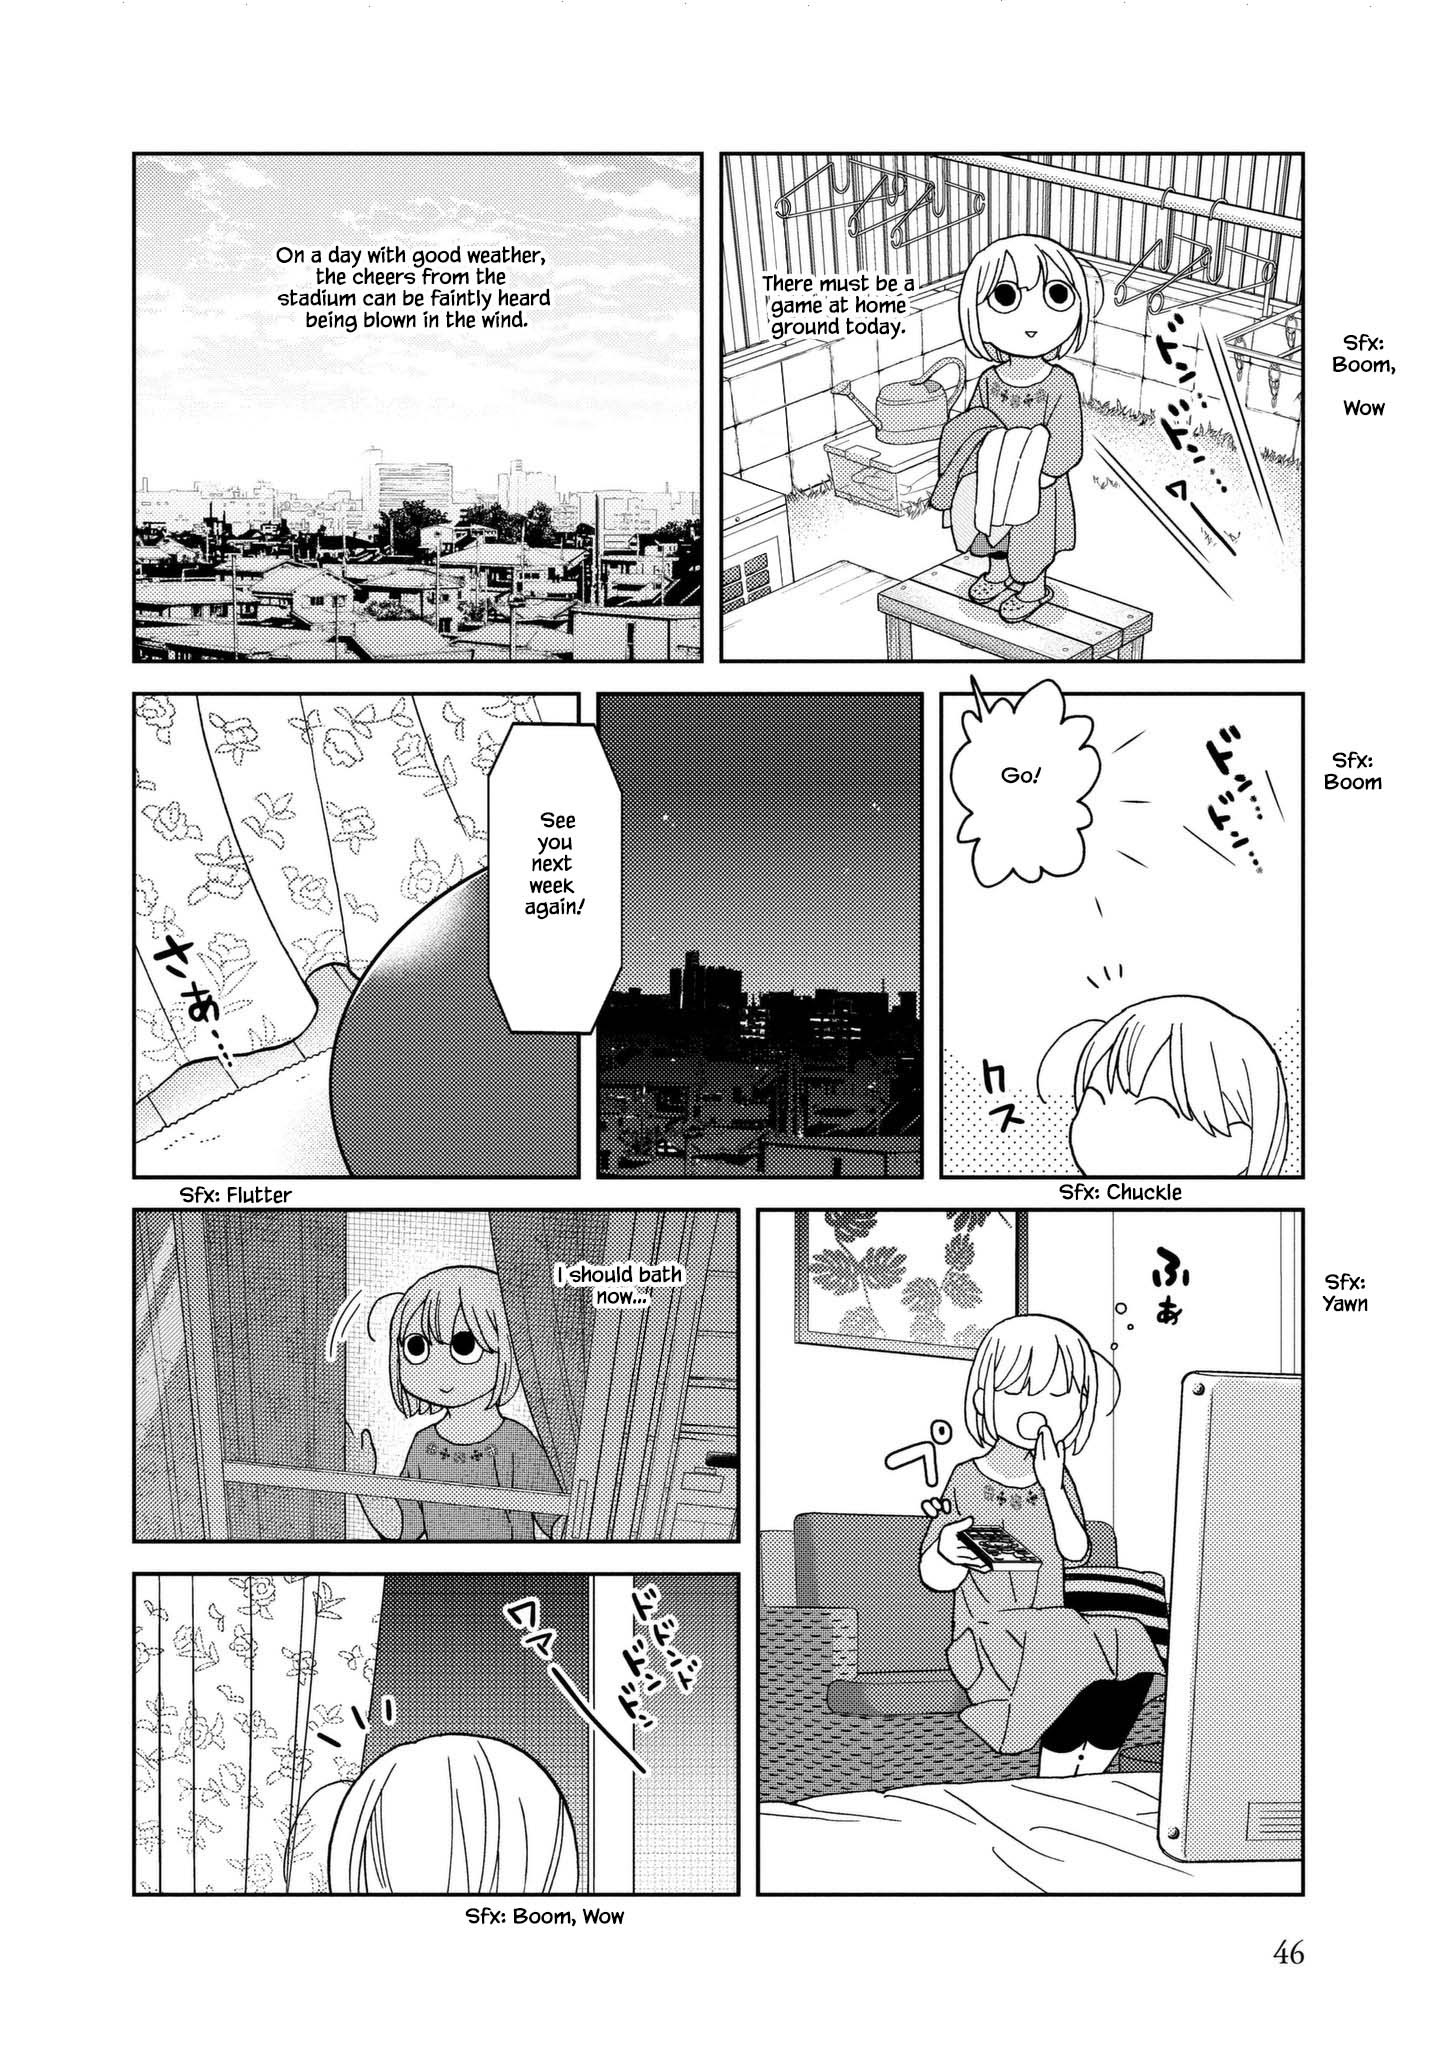 Takako-San - 44 page 4-9982f6da